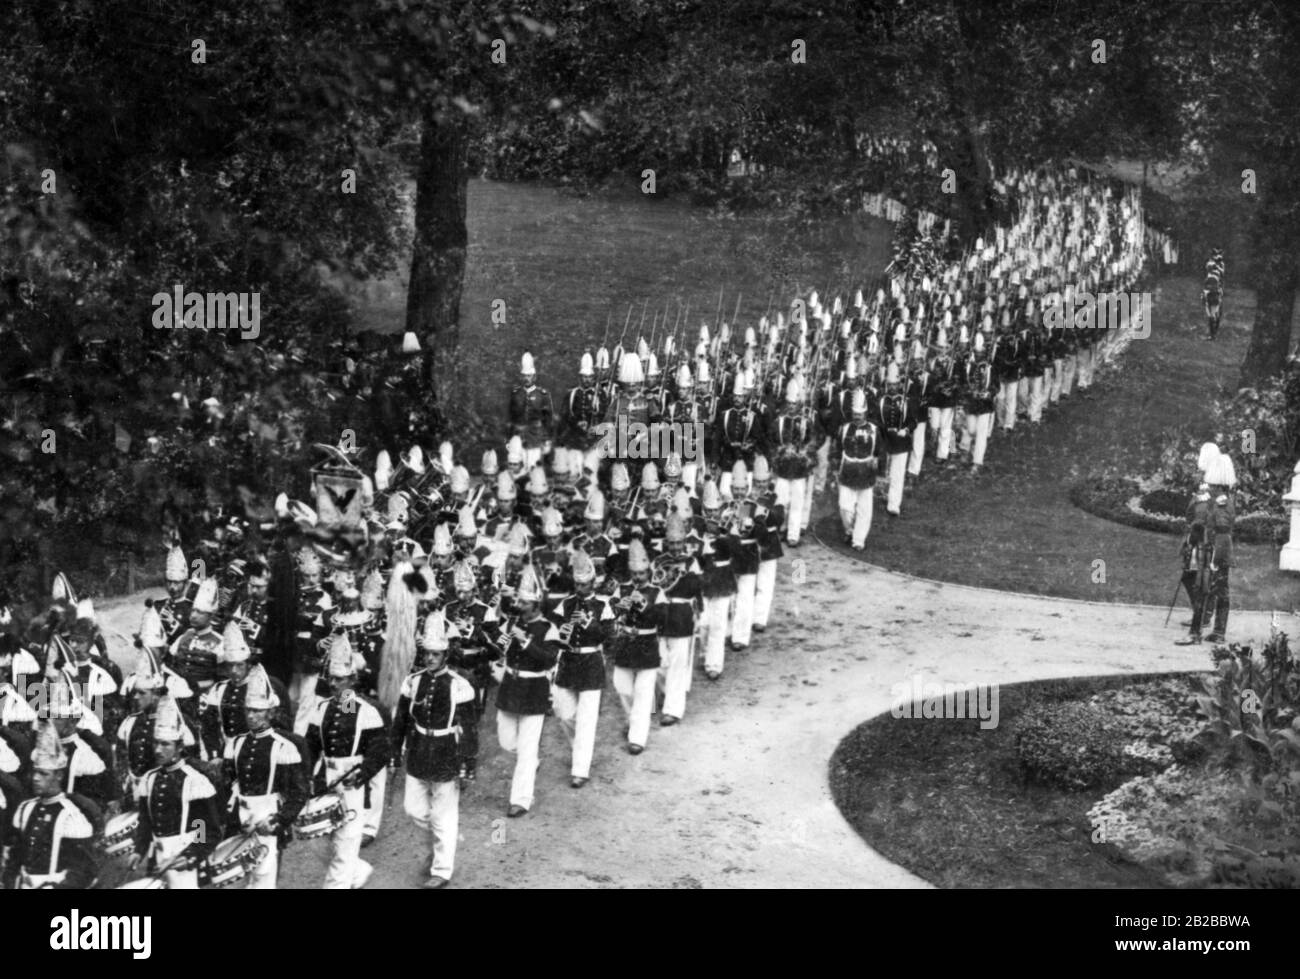 La fascia del Reggimento della Guardia A Piedi Prussiana 1st a piedi in uniforme parata. Foto non ondulata. Foto Stock